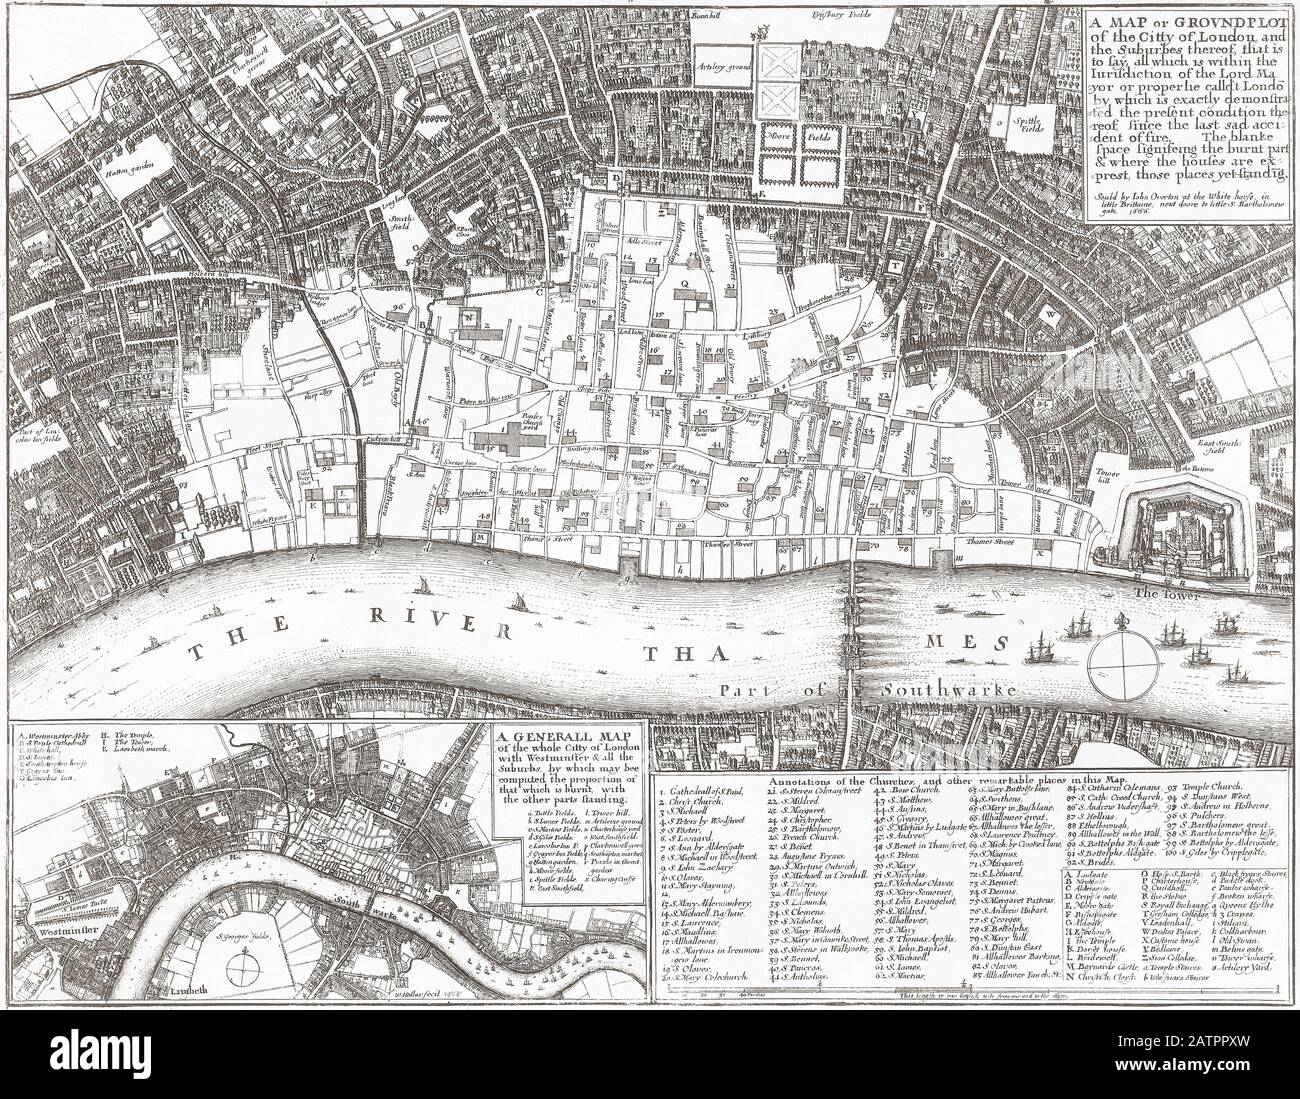 Mappa che mostra l'entità dei danni causati dal Grande incendio di Londra, 1666. Secondo la descrizione nell'angolo in alto a destra della mappa, l'area bianca mostra ciò che è stato bruciato e la proprietà all'interno dell'area sopravvissuta. Foto Stock